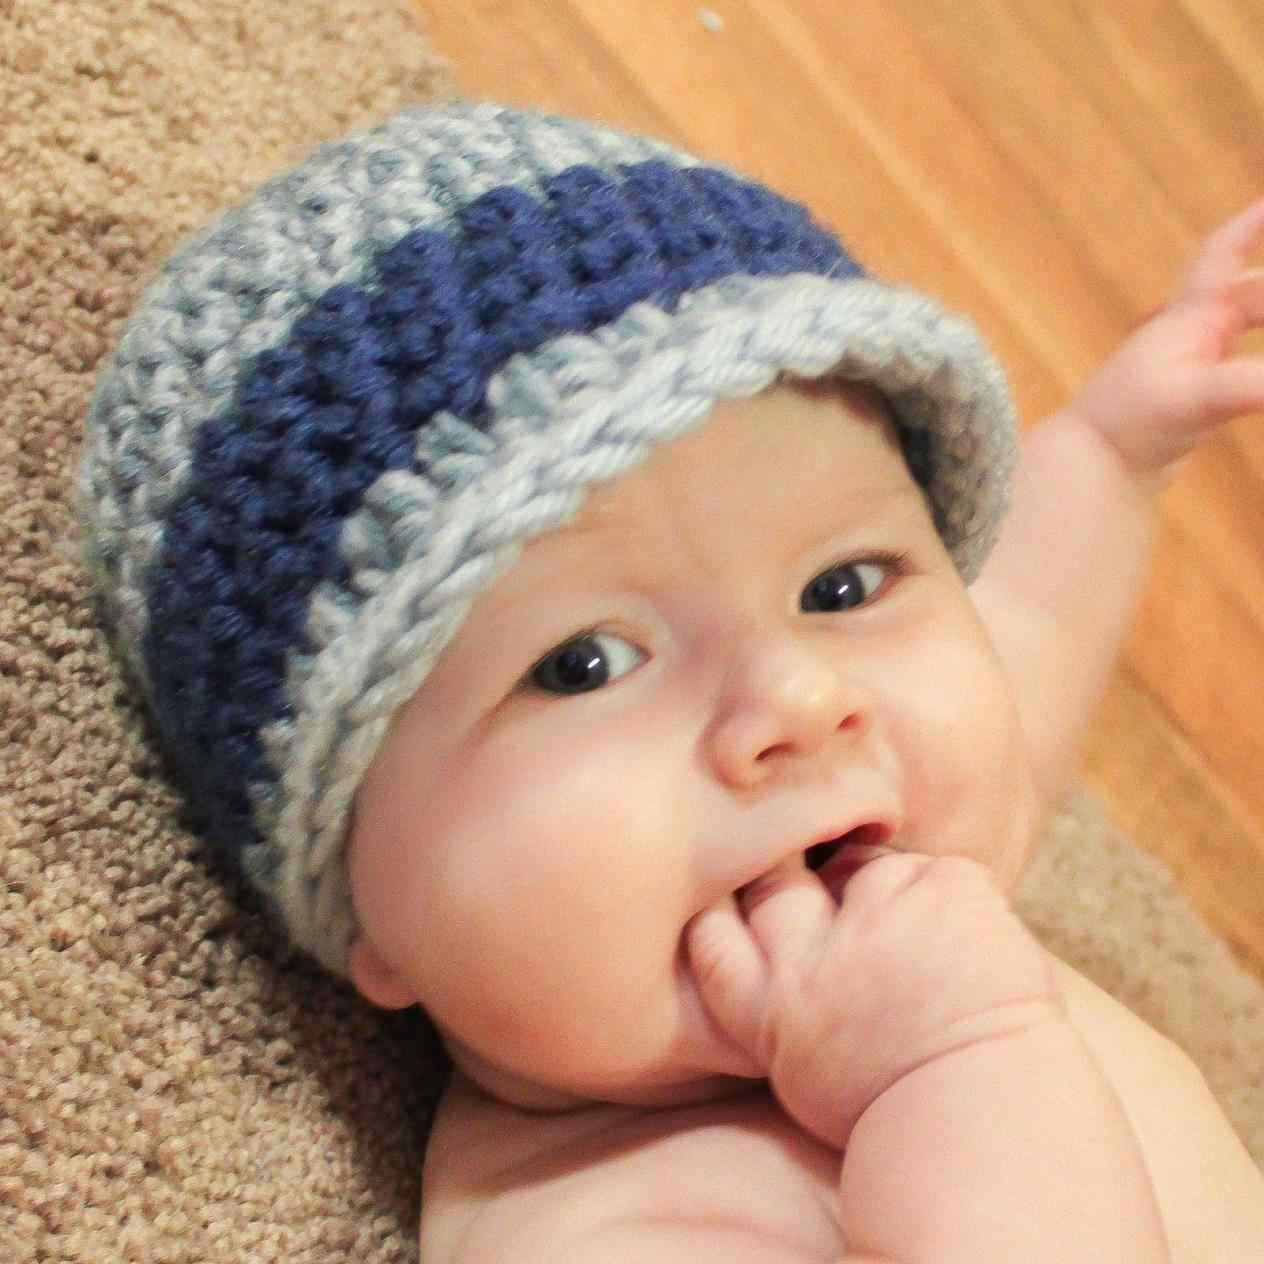 Free Crochet Pattern Baby Boy Hat Free Crochet Ba Boy Hat Pattern S Little From The Cloche